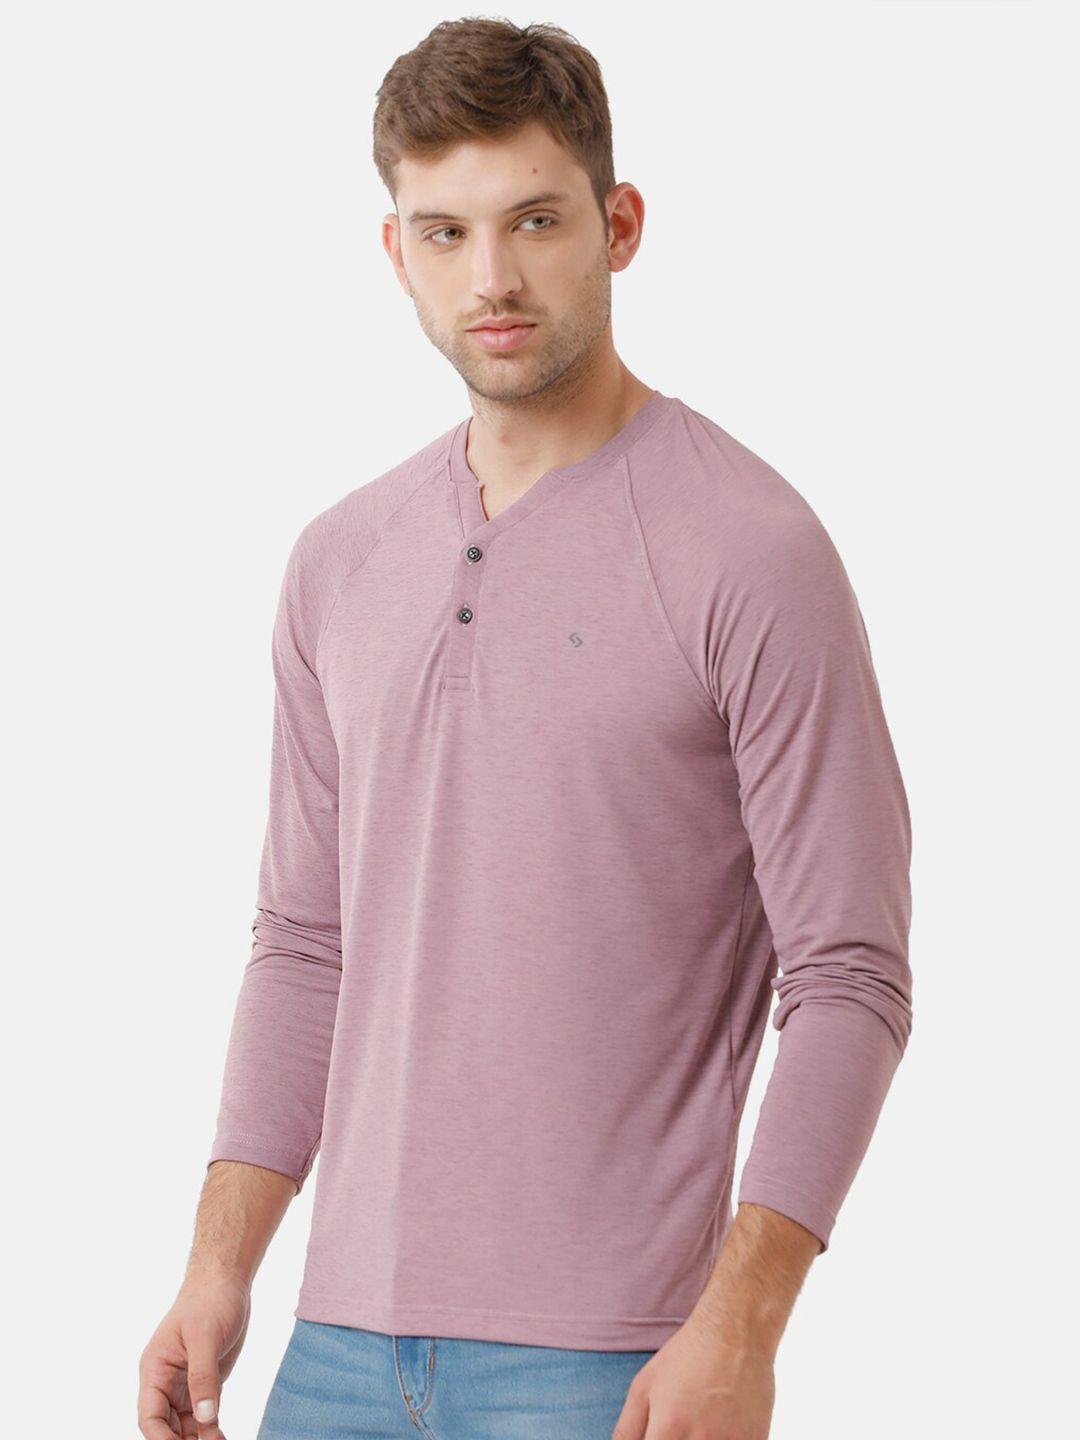 classic polo men lavender henley neck cotton t-shirt